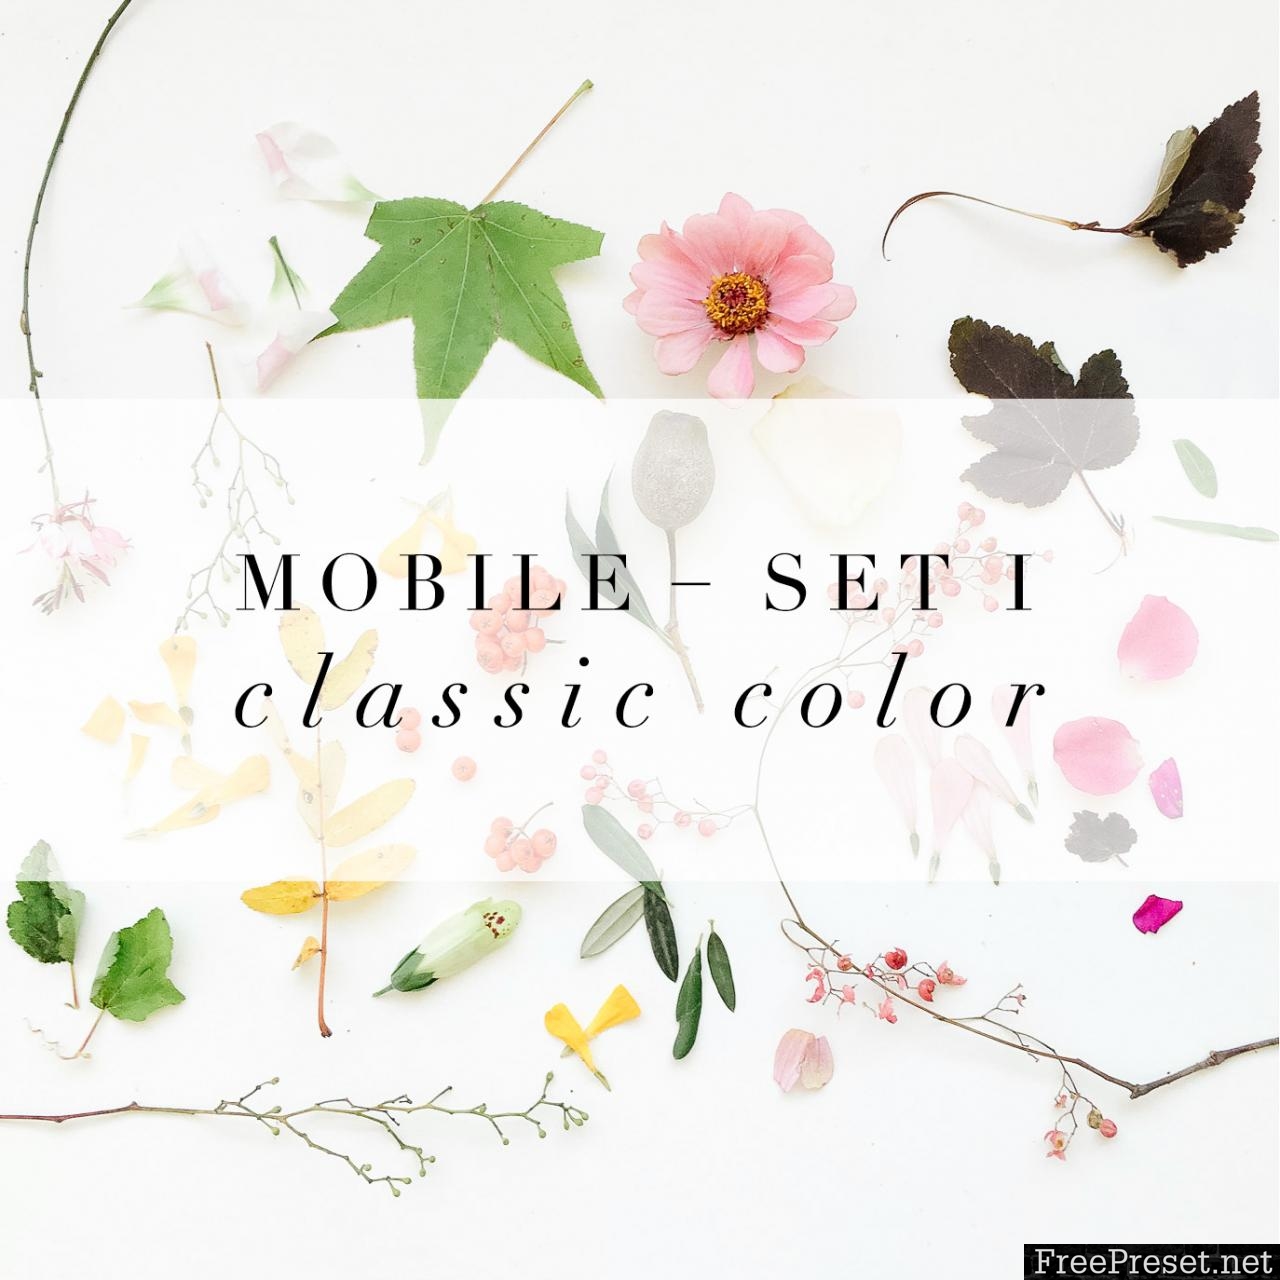 Jessica Kettle - Set I + Set II Desktop & Mobile Presets